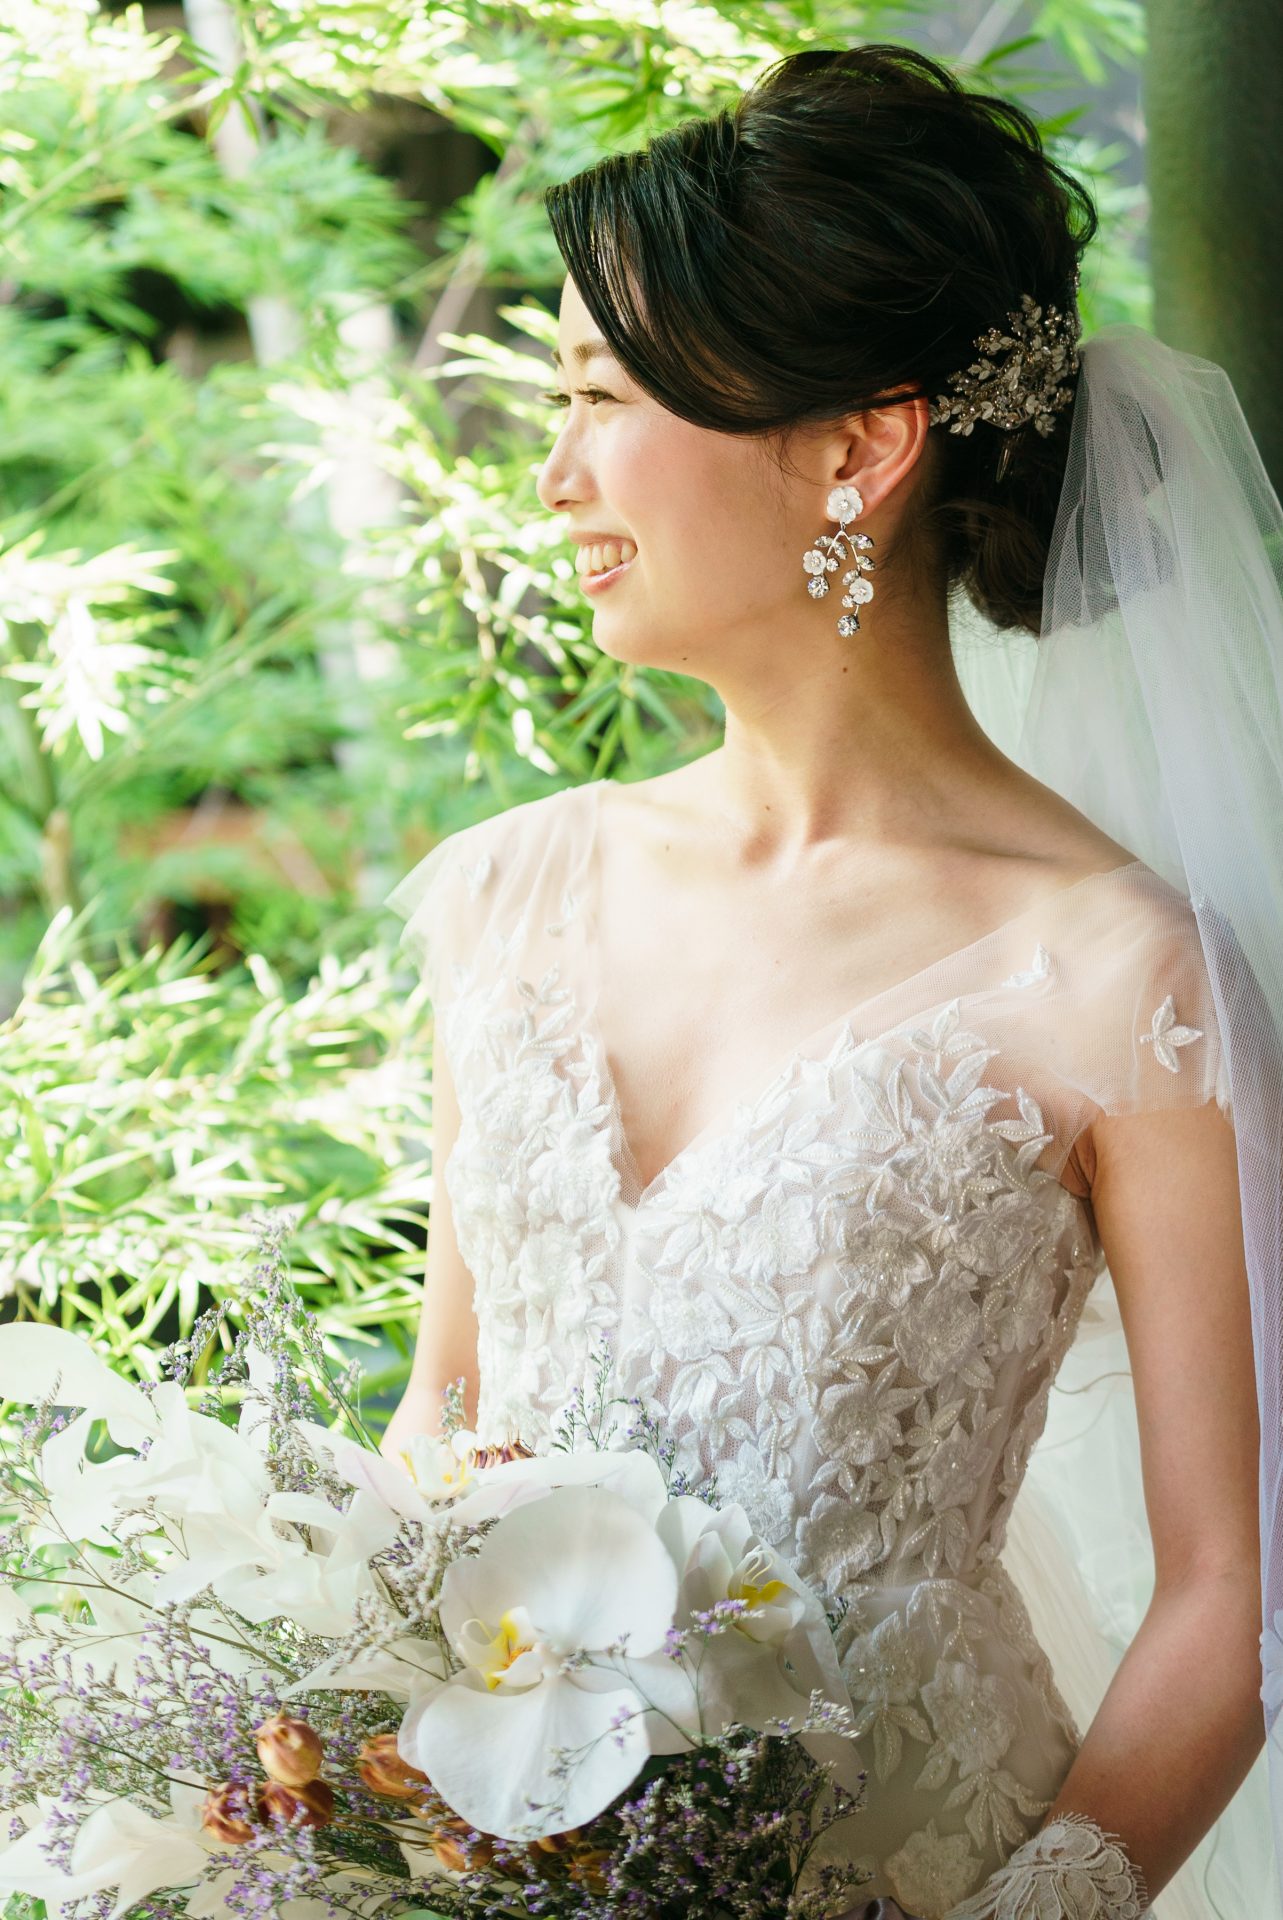 THE TREAT DRESSINGがザカワブンナゴヤでお式をする花嫁様におすすめするキャロリーナヘレラのウェディングドレス